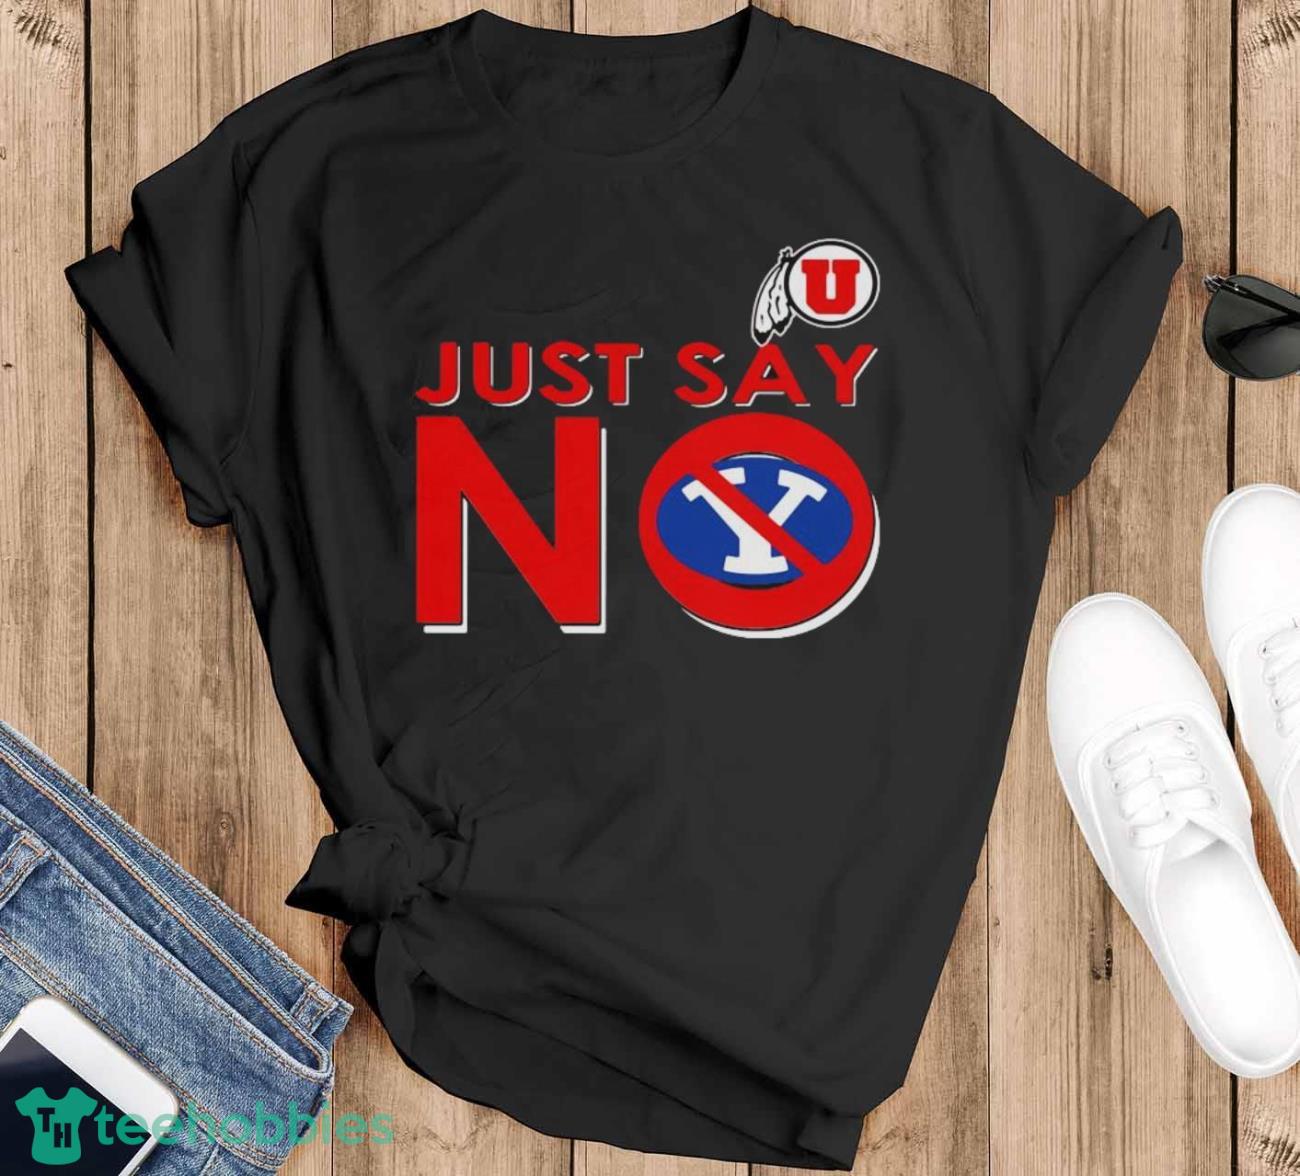 Utah Utes Just Say No Byu Cougars Shirt - Black T-Shirt